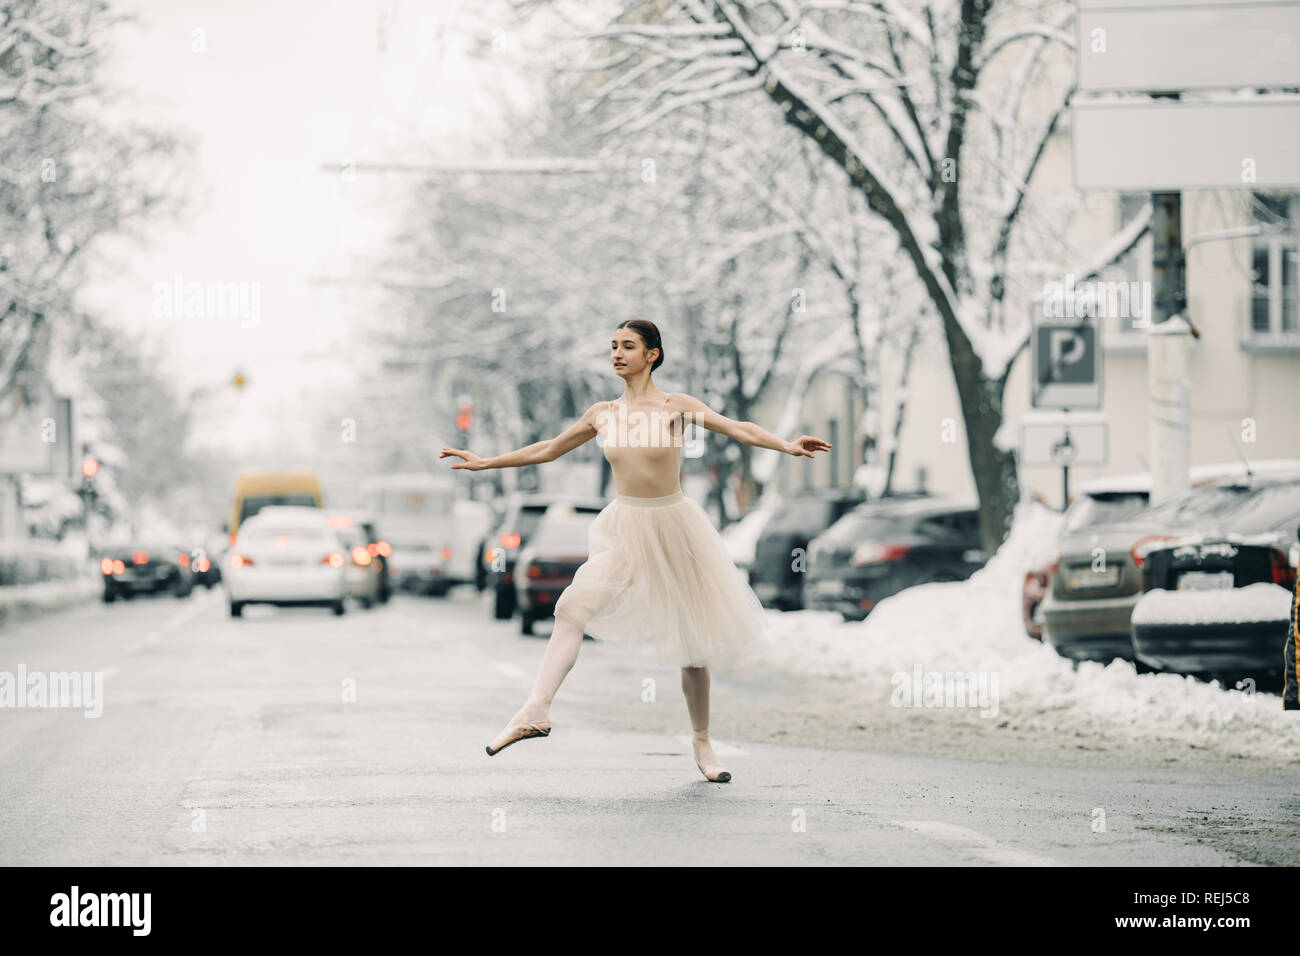 Belle jupe transparente en ballerine danse sur la rue des harfangs ville  parmi les voitures Photo Stock - Alamy